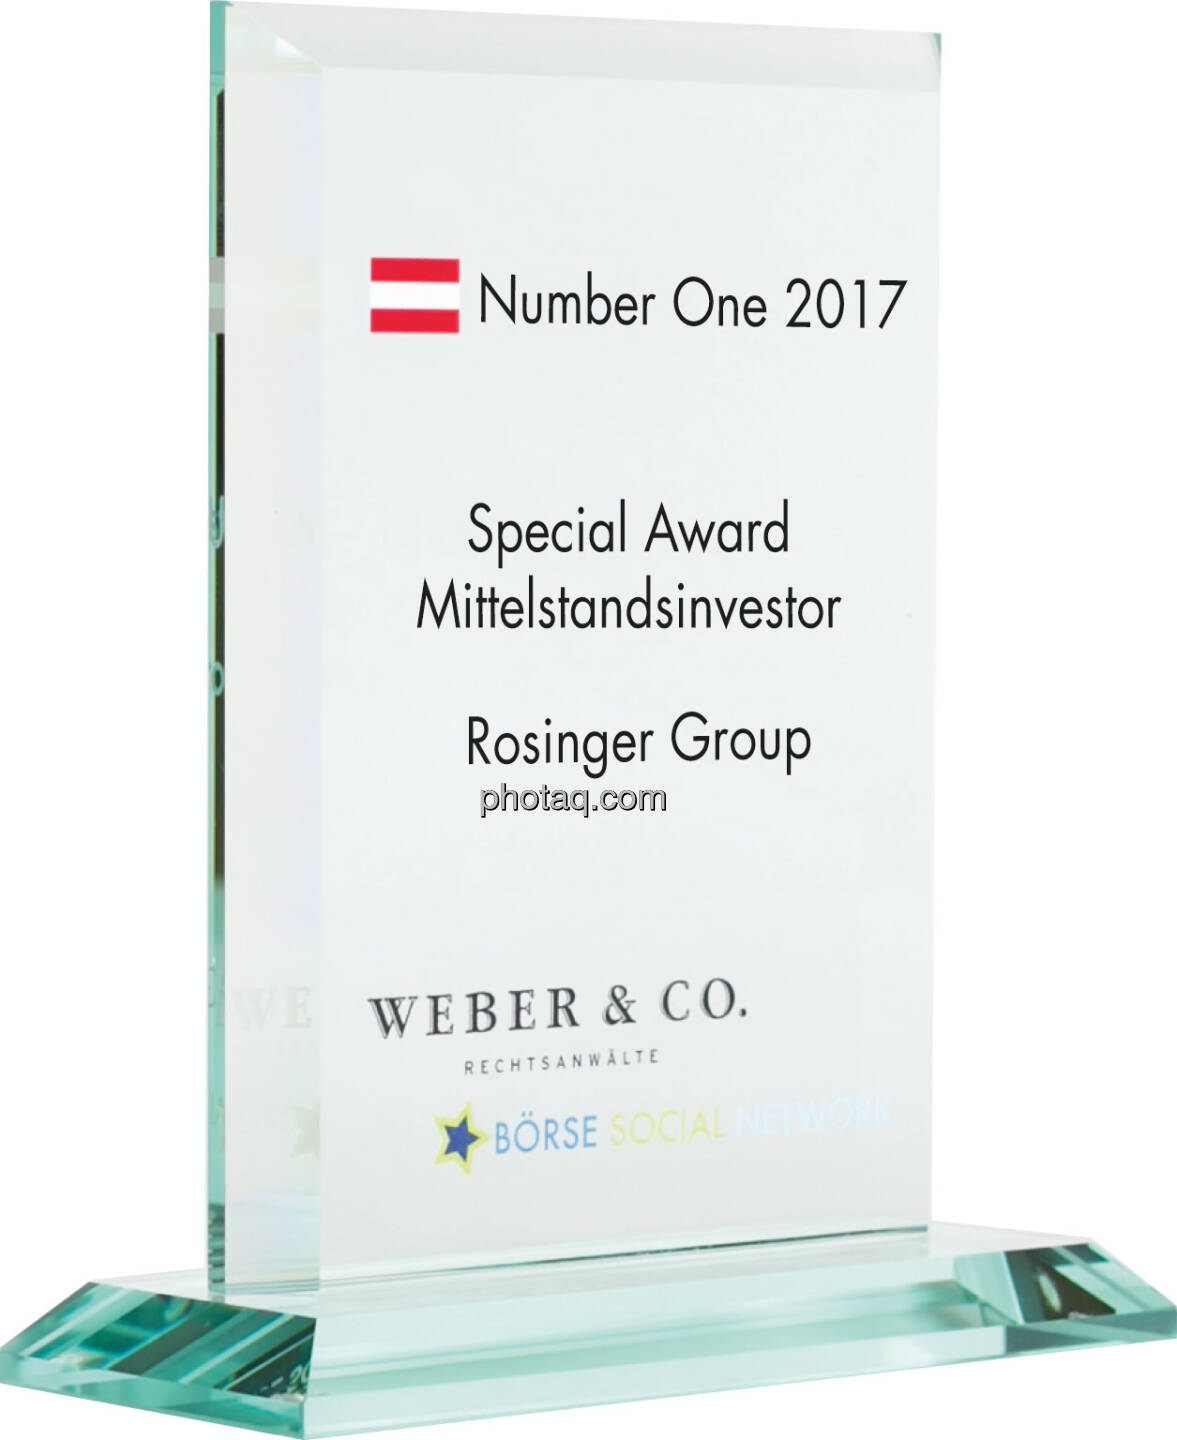 Number One Awards 2017 - Special Award Mittelstandsinvestor - Rosinger Group